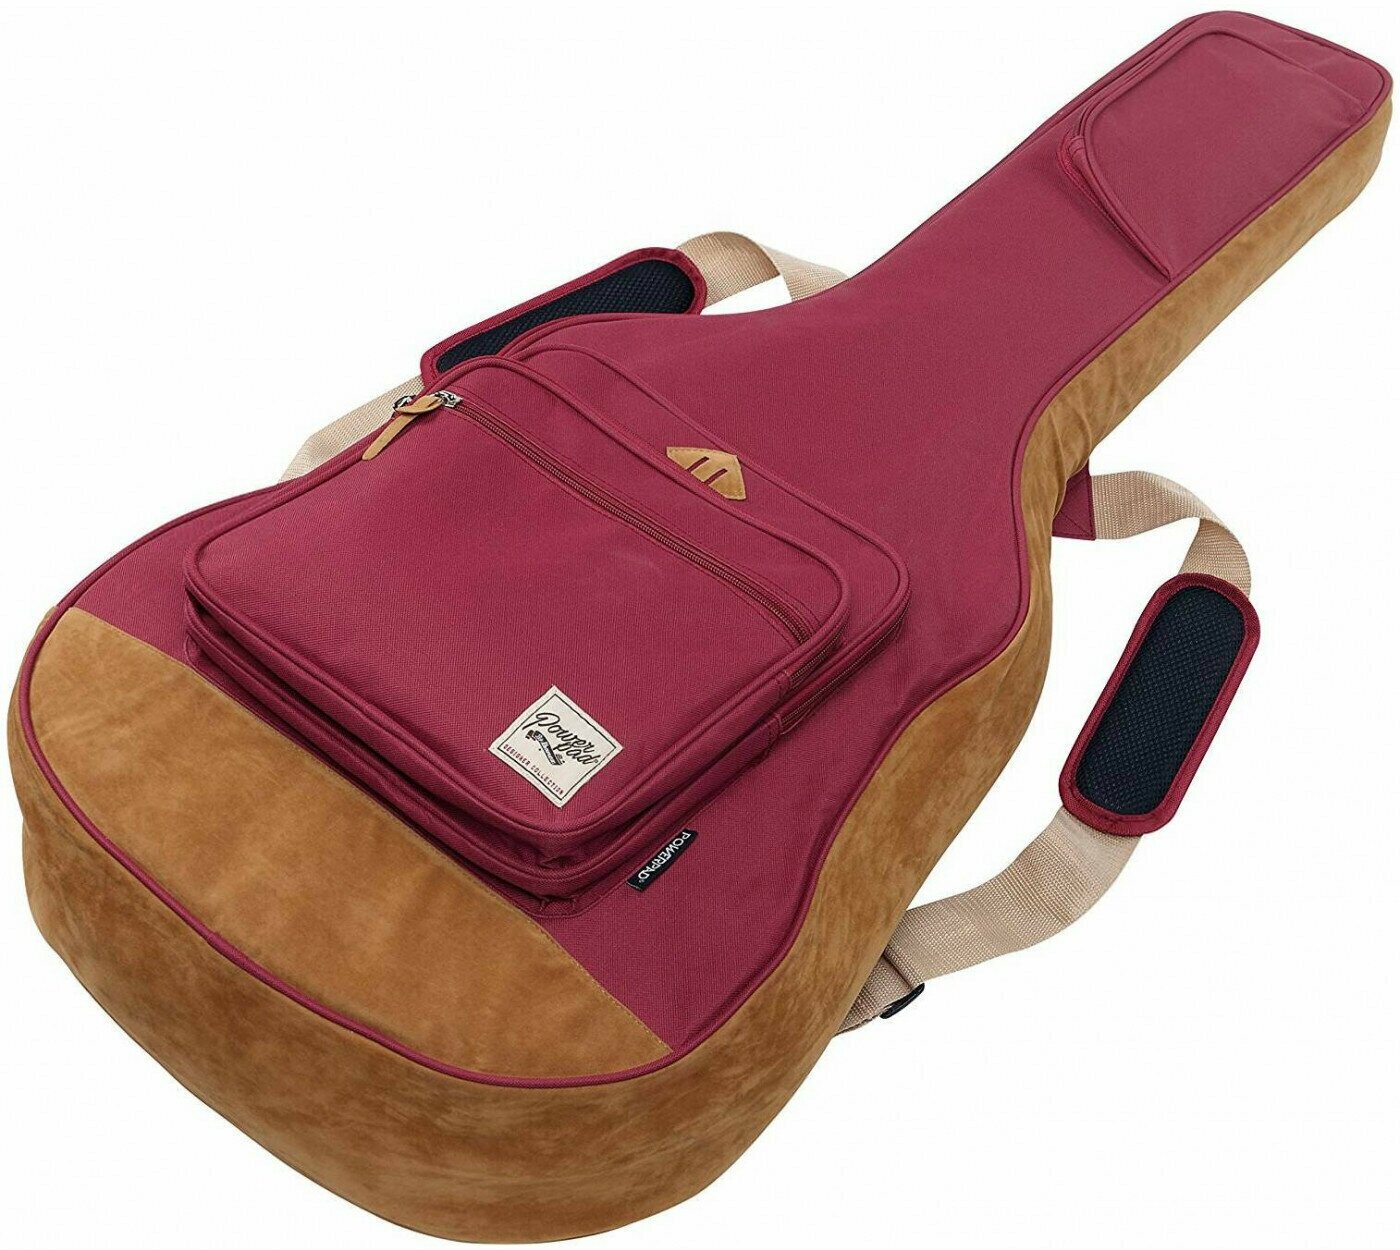 IBANEZ IAB541-WR чехол для акустической гитары Designer Collection цвет красного вина